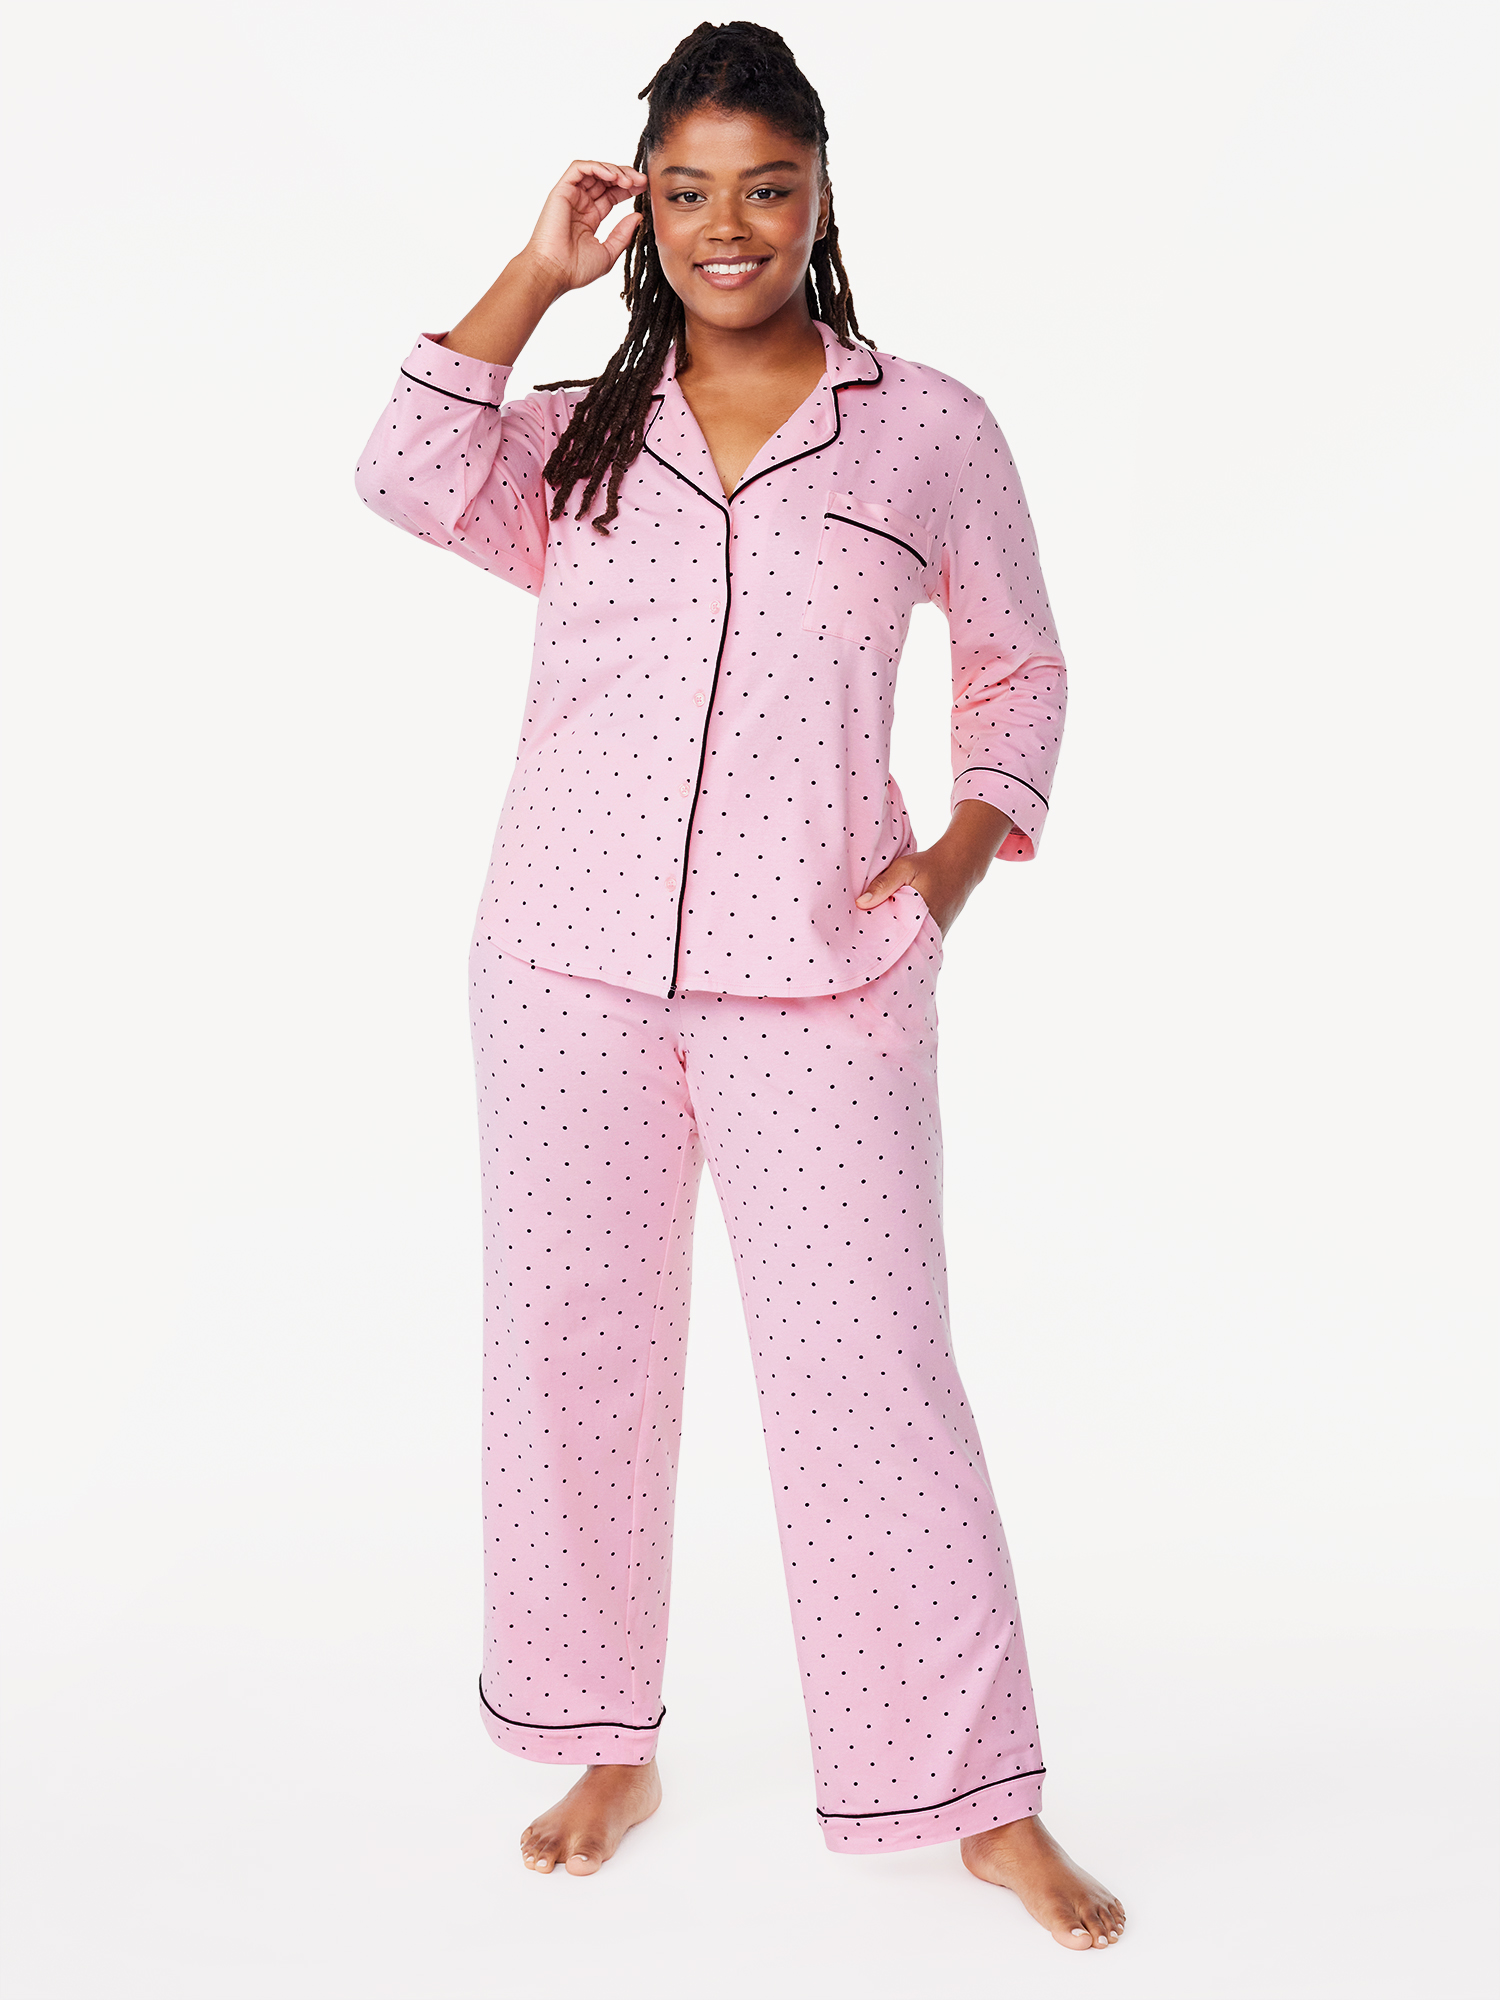 Joyspun Womens Cotton Blend Notch Collar Top and Pants Pajama Set, 2-Piece, Sizes S to 4X